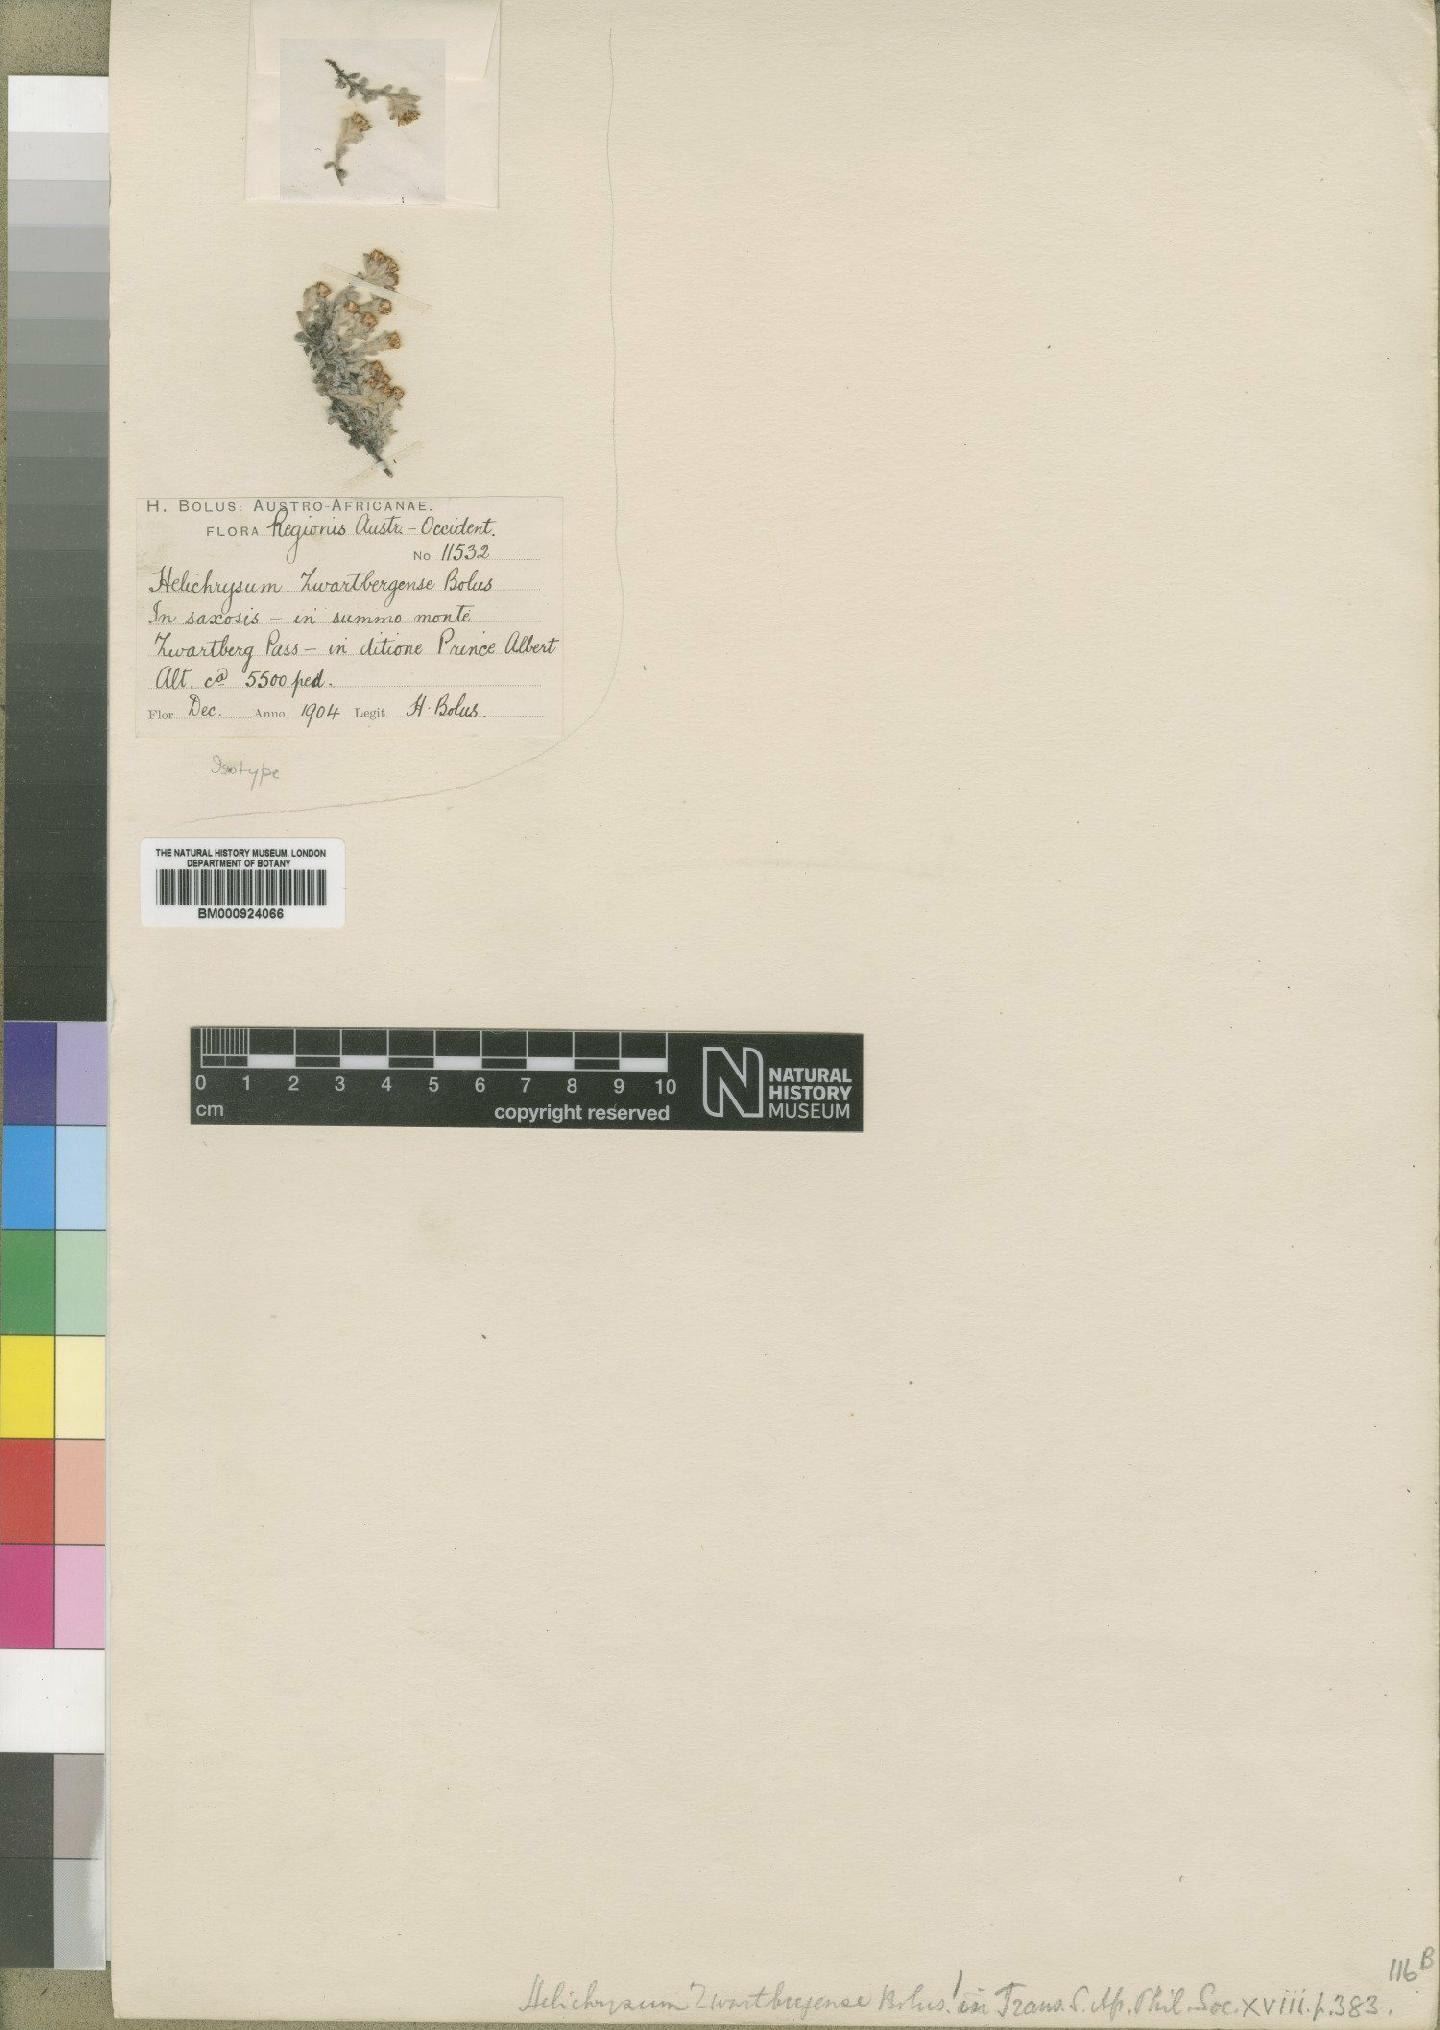 To NHMUK collection (Helichrysum zwartbergense Bolus; Isotype; NHMUK:ecatalogue:4529094)